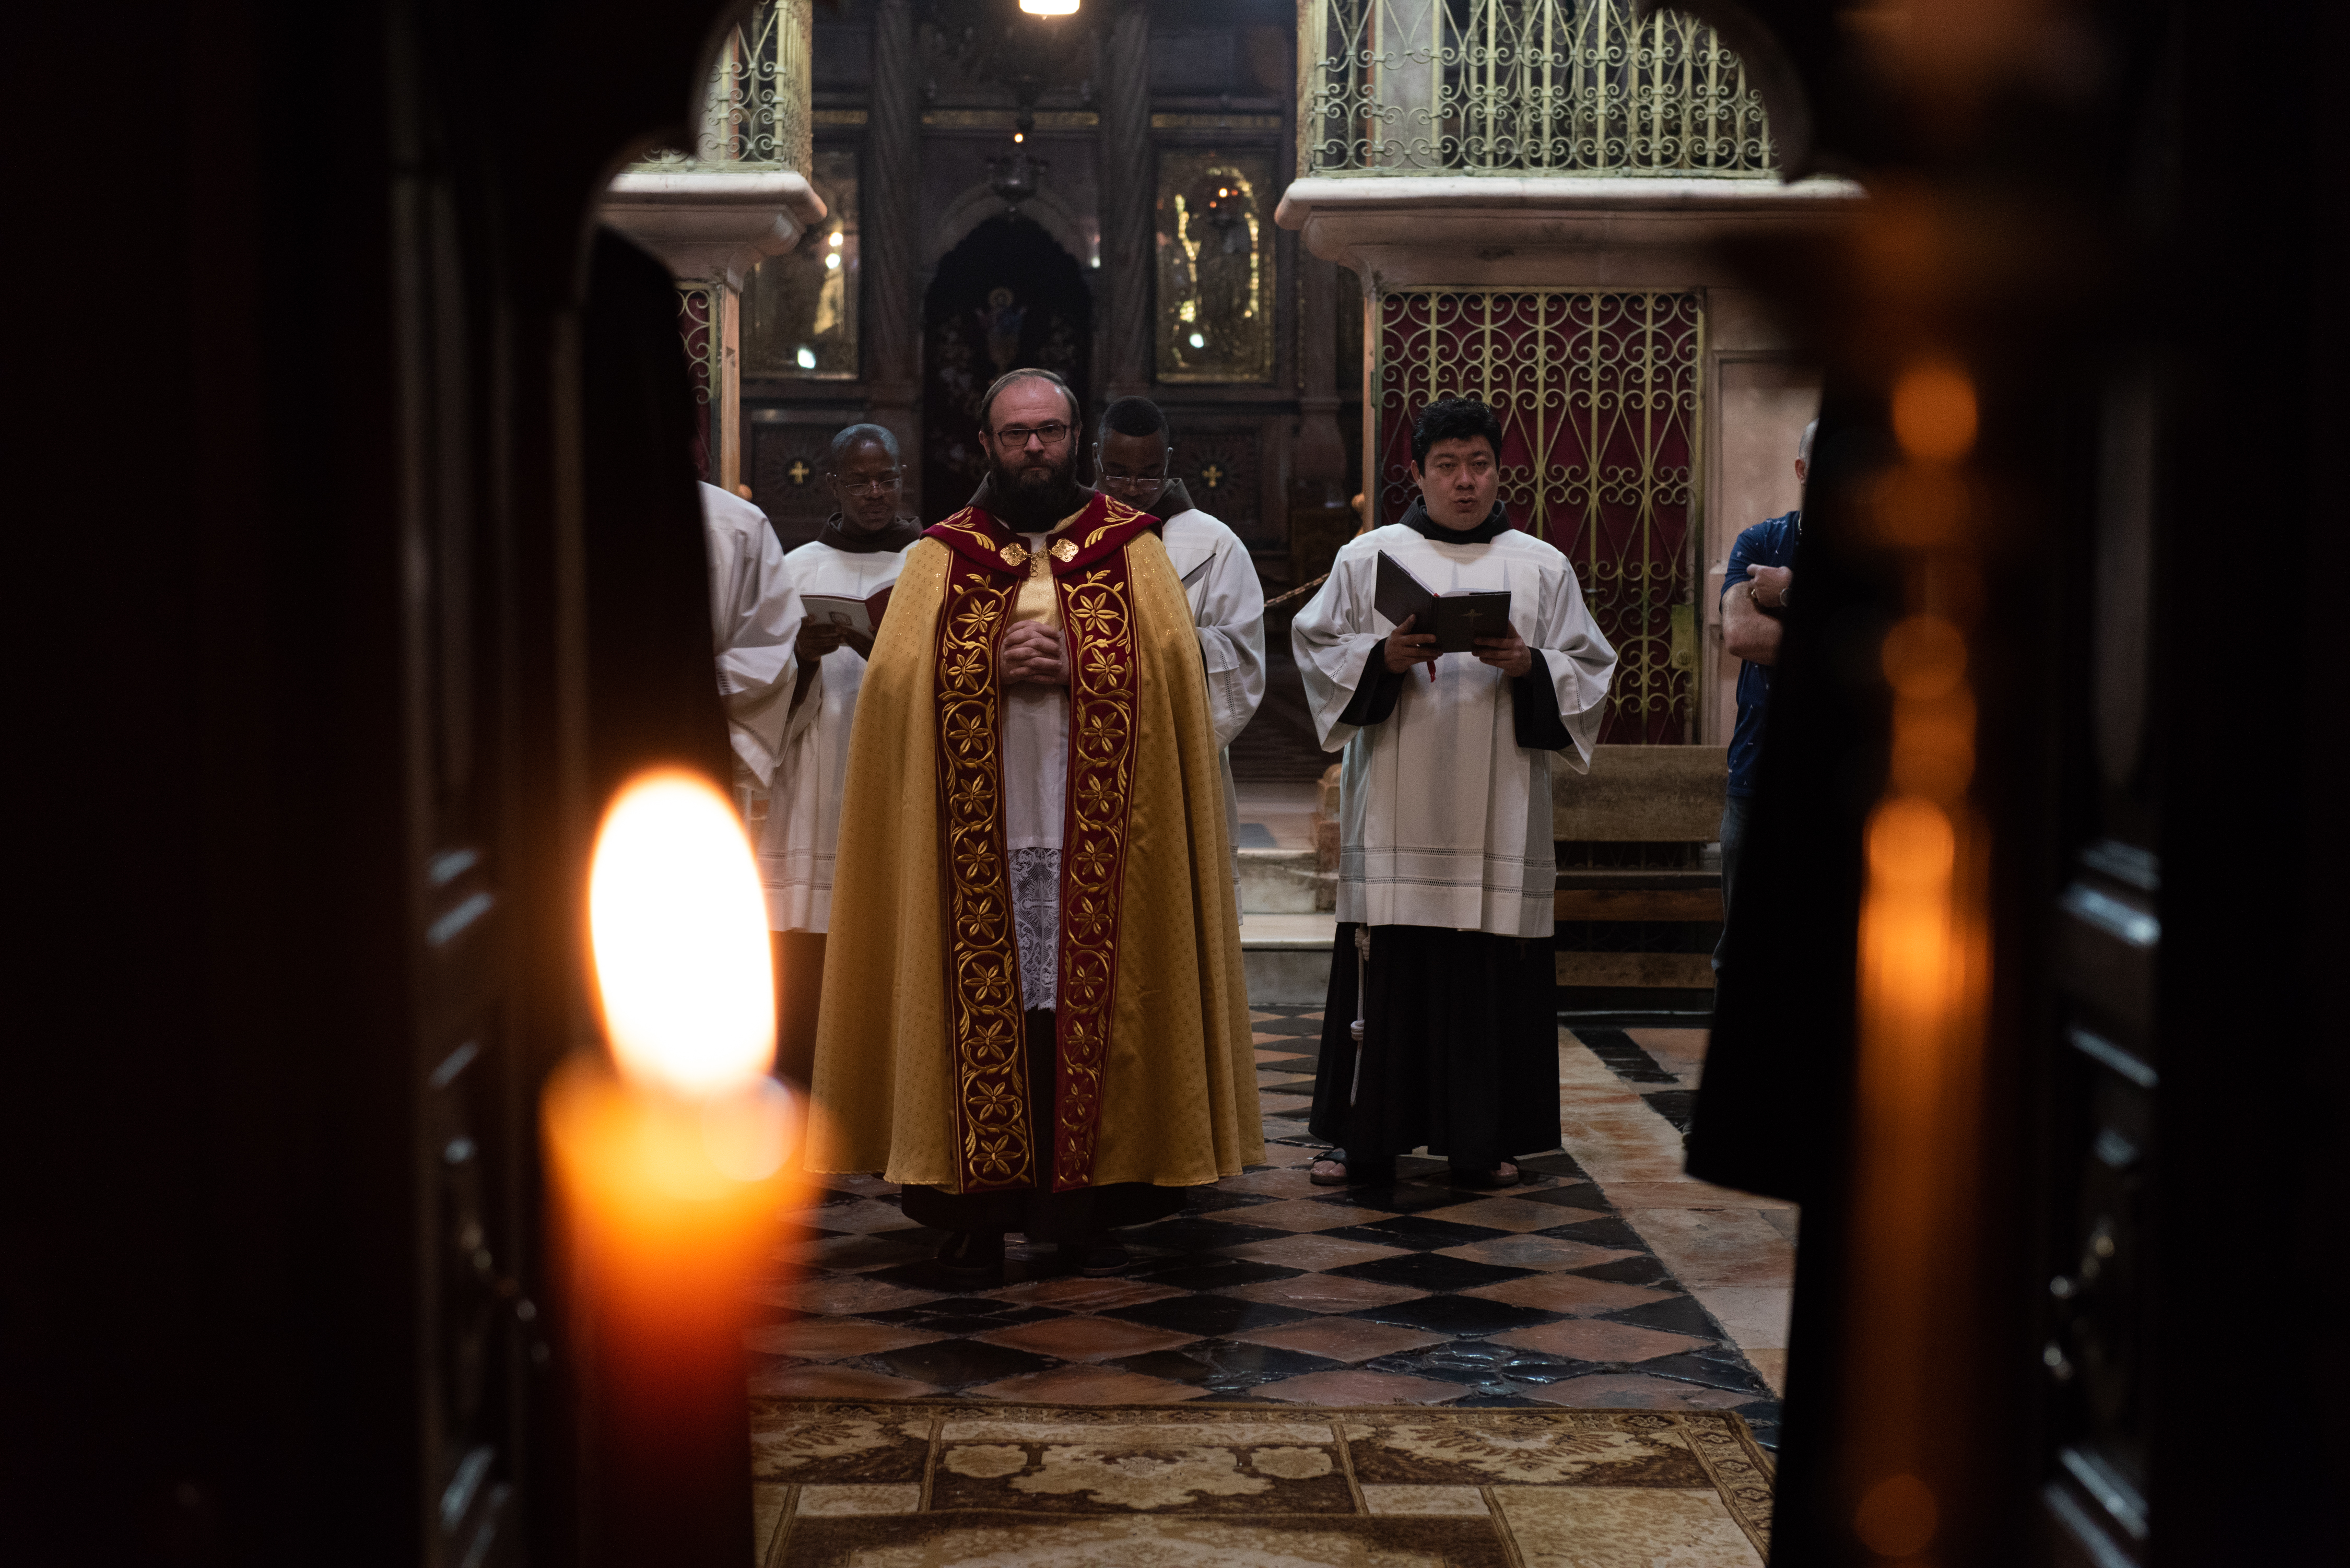 Fr. Sinisa avec des vêtements diaconaux